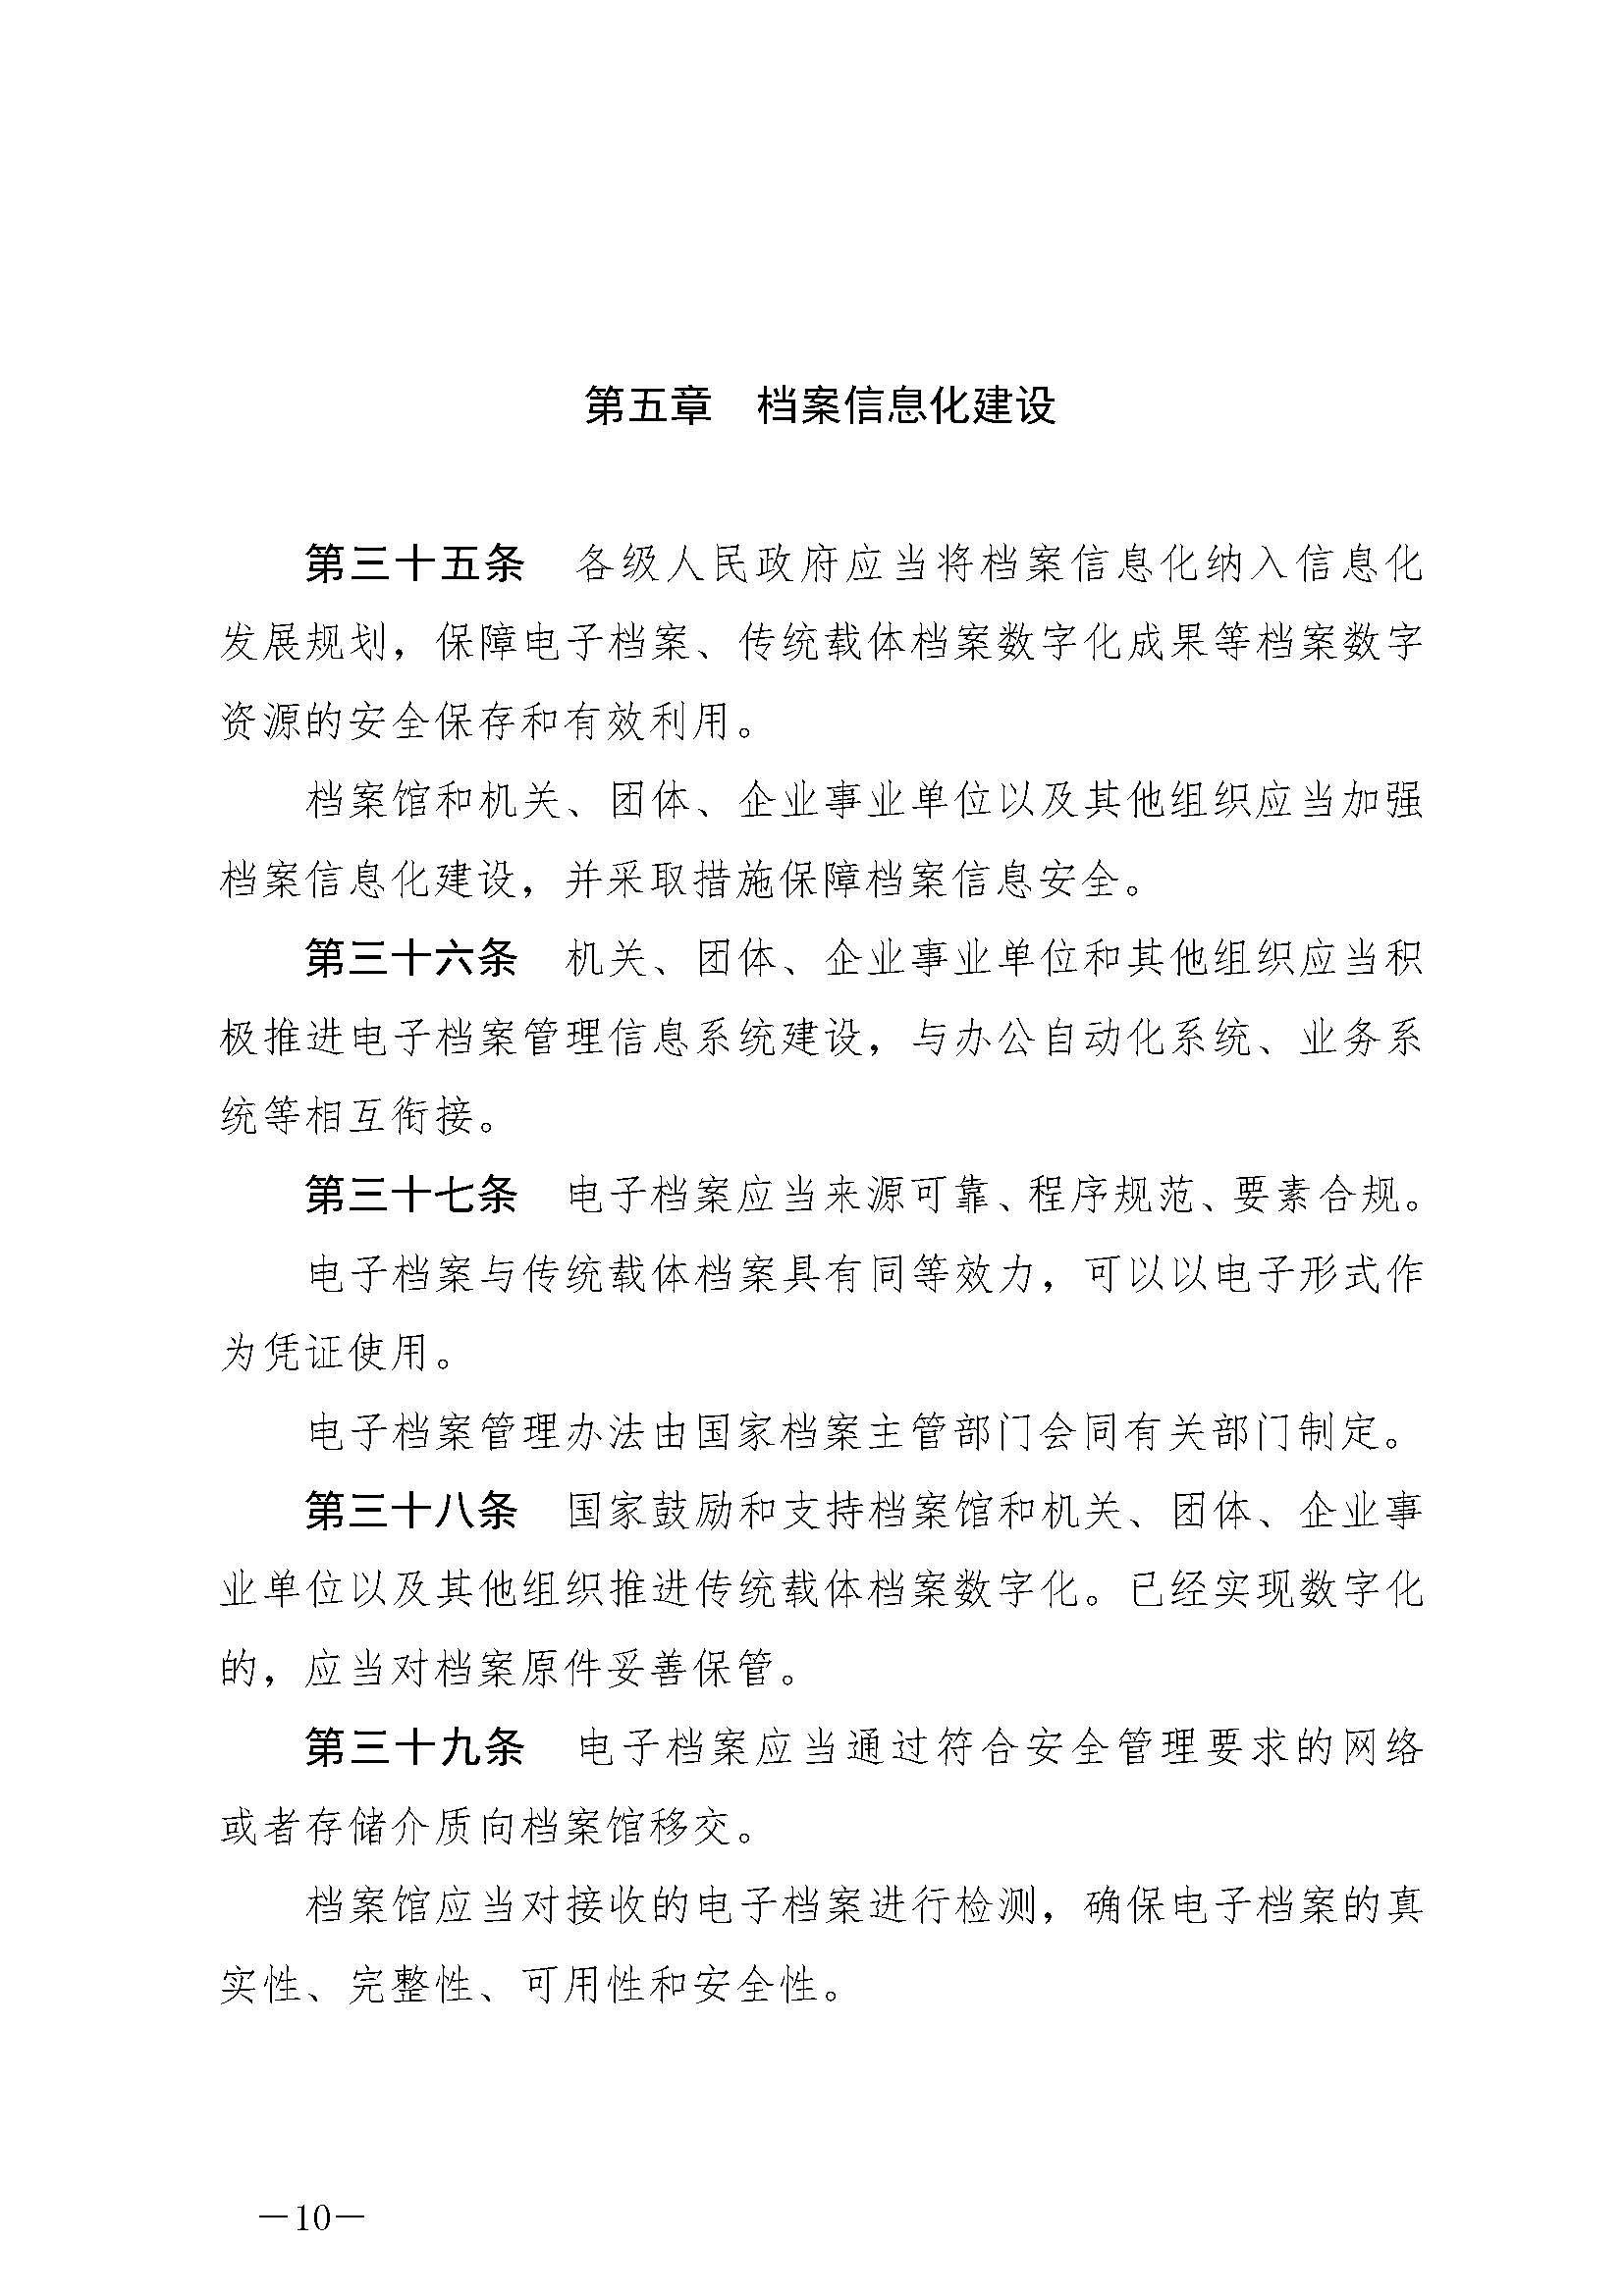 《中华人民共和国档案法》_页面_10.jpg